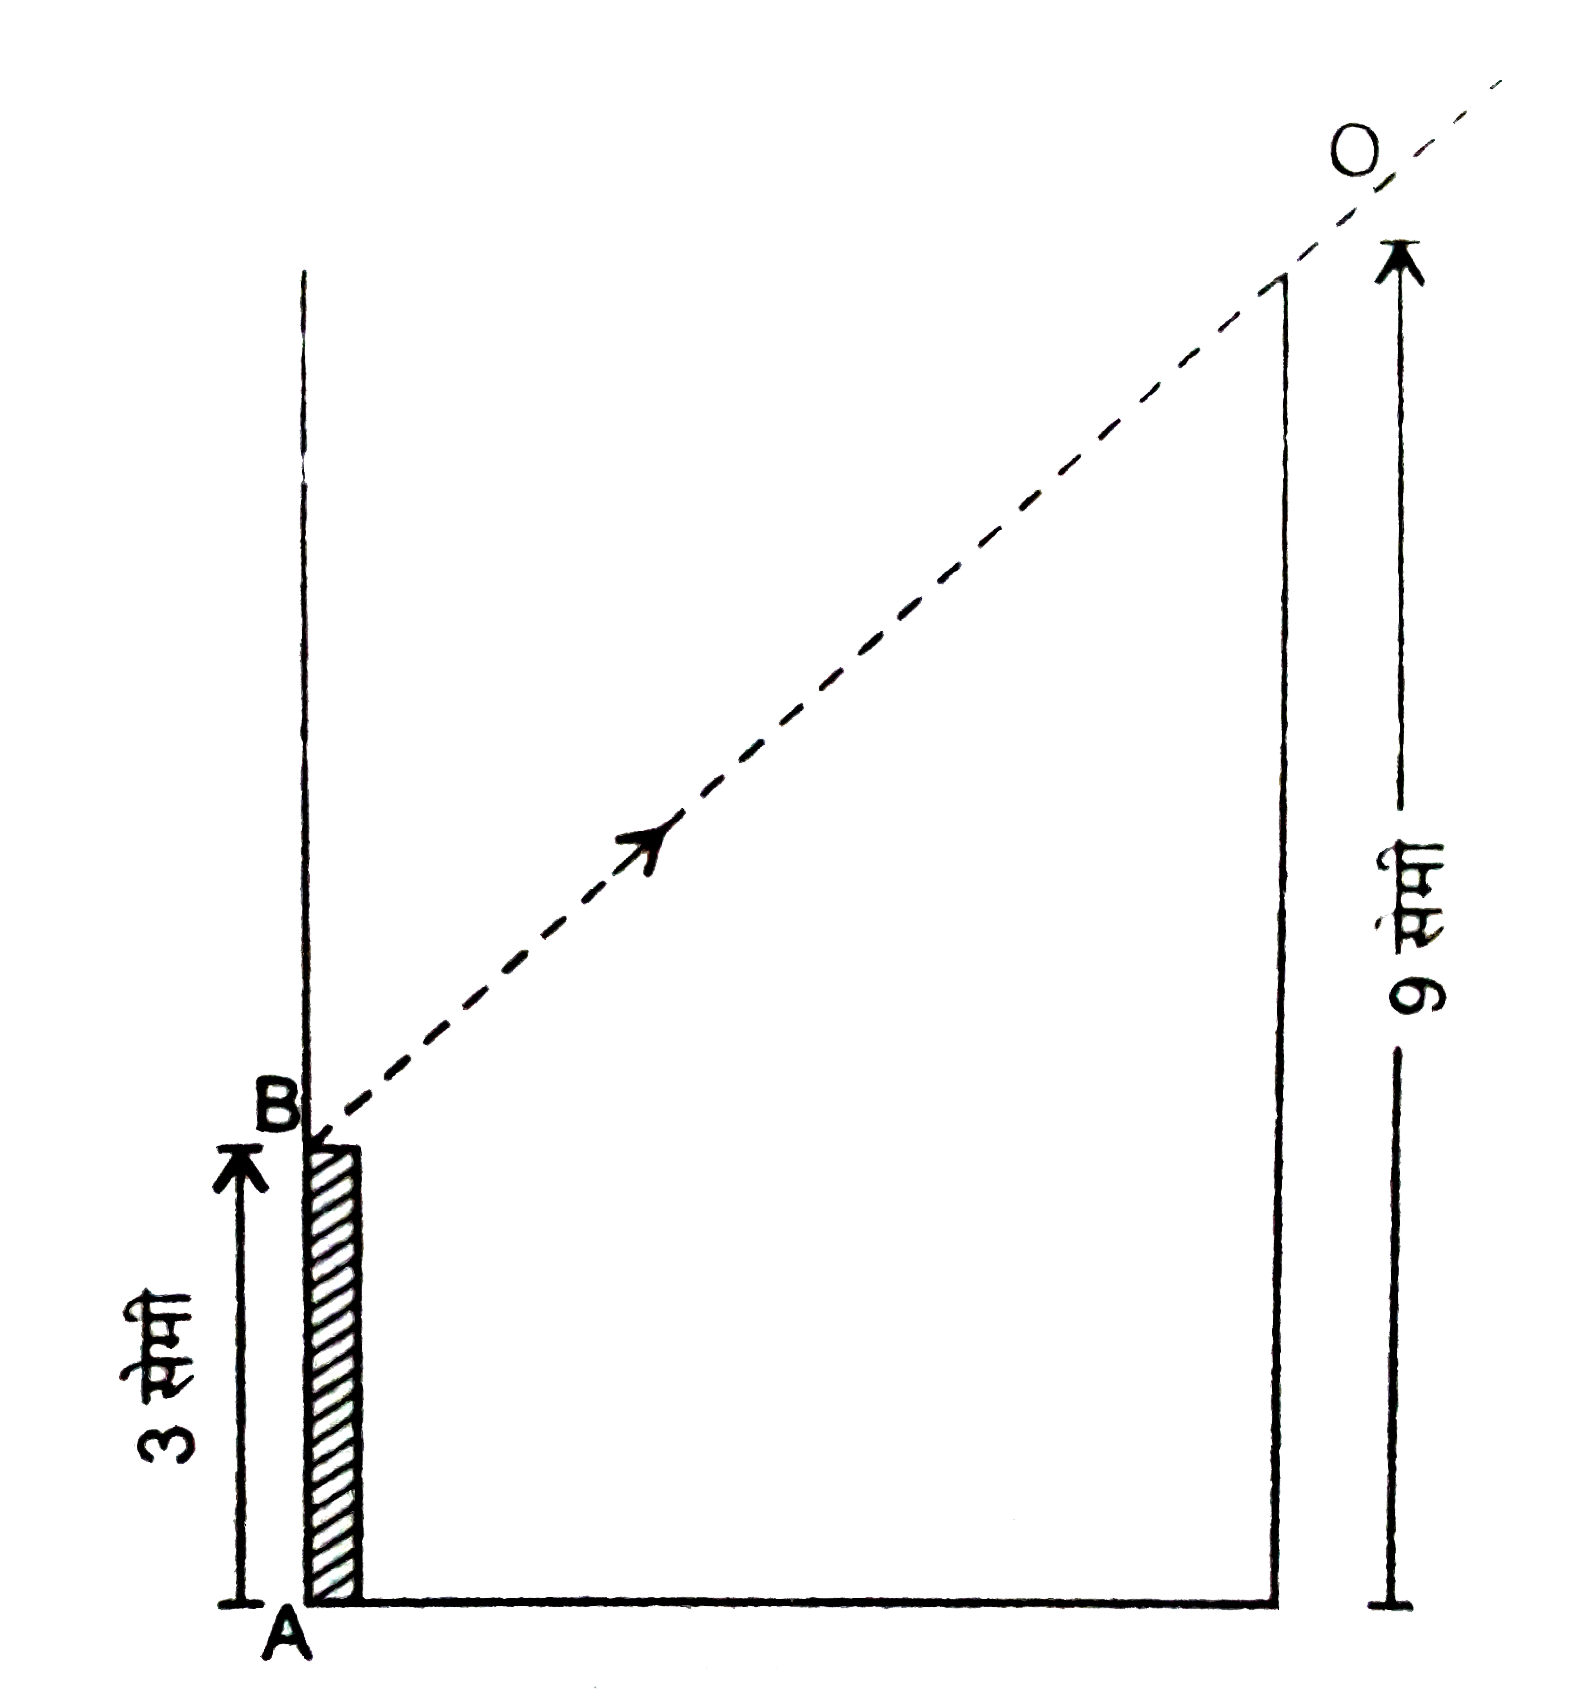 3 सेमी लम्बाई की एक पतली छड़ 9 सेमी ऊँचाई तथा 6 सेमी व्यास वाले बीकर में चित्र (a) के अनुसार स्थित है। जिसका ऊपरी सिरा प्रेक्षक O द्वारा देखा जाता है। जब बीकर में 6  सेमी की ऊँचाई तक द्रव भरा जाता है तब उसी स्थिति में प्रेक्षक छड़ का निचला सिरा देखता है। द्रव का अपवर्तनांक ज्ञात कीजिये।